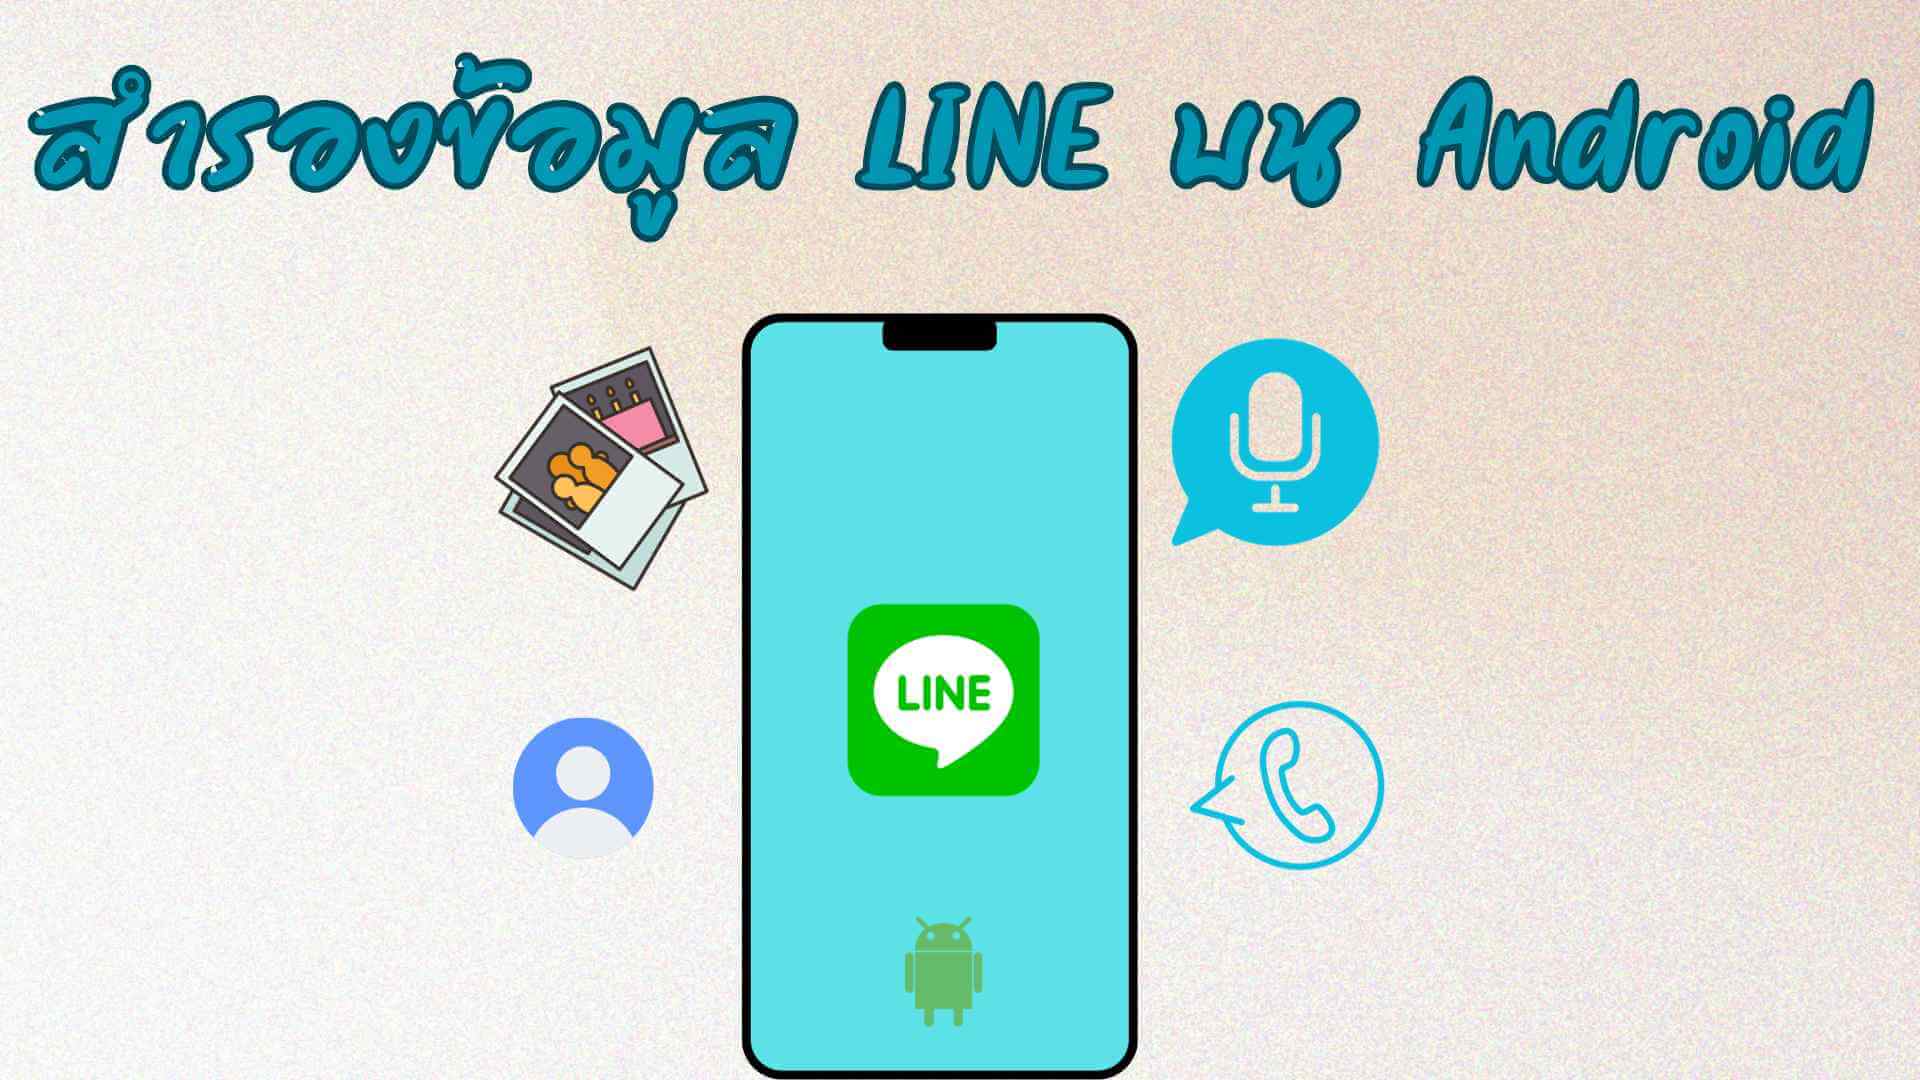 วิธีง่าย ๆ ในการสำรองข้อมูล LINE บน Android ที่คุณควรรู้!